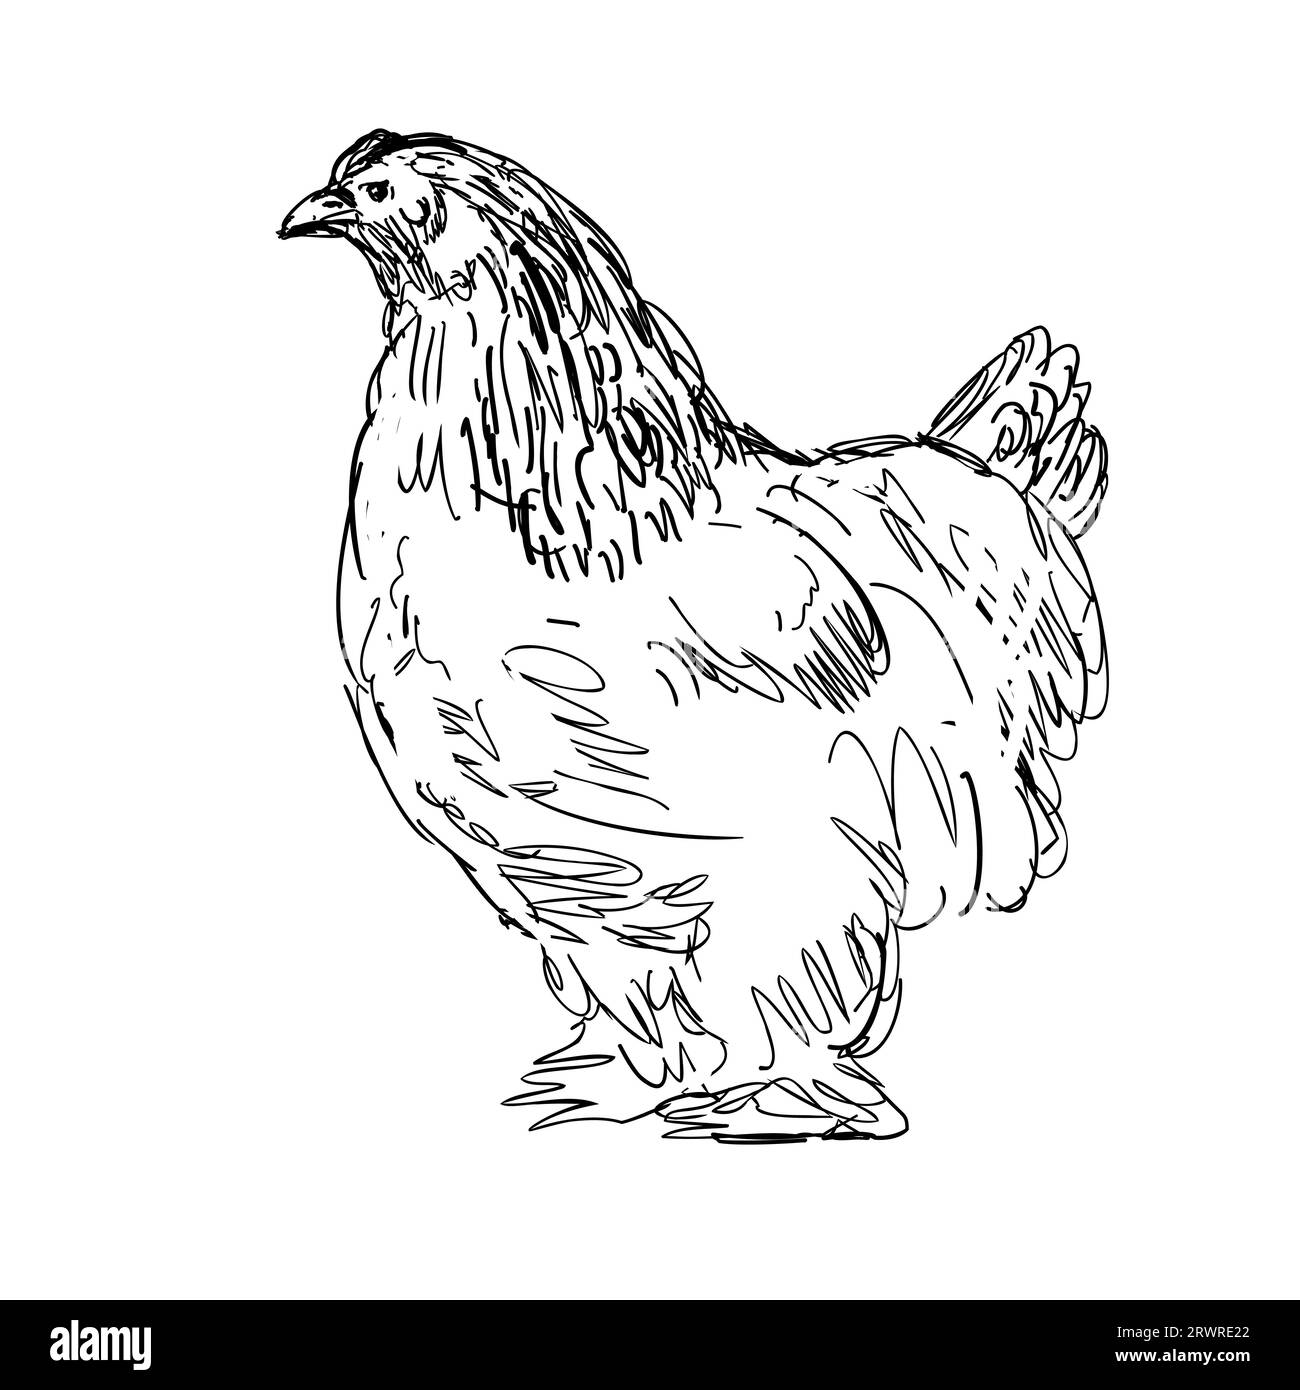 Dessin illustration de style croquis d'une poule Brahma, Brahma Pootra, Burnham, Gray Chittagong ou Shanghai, une race américaine de poulet domestique vu f Banque D'Images